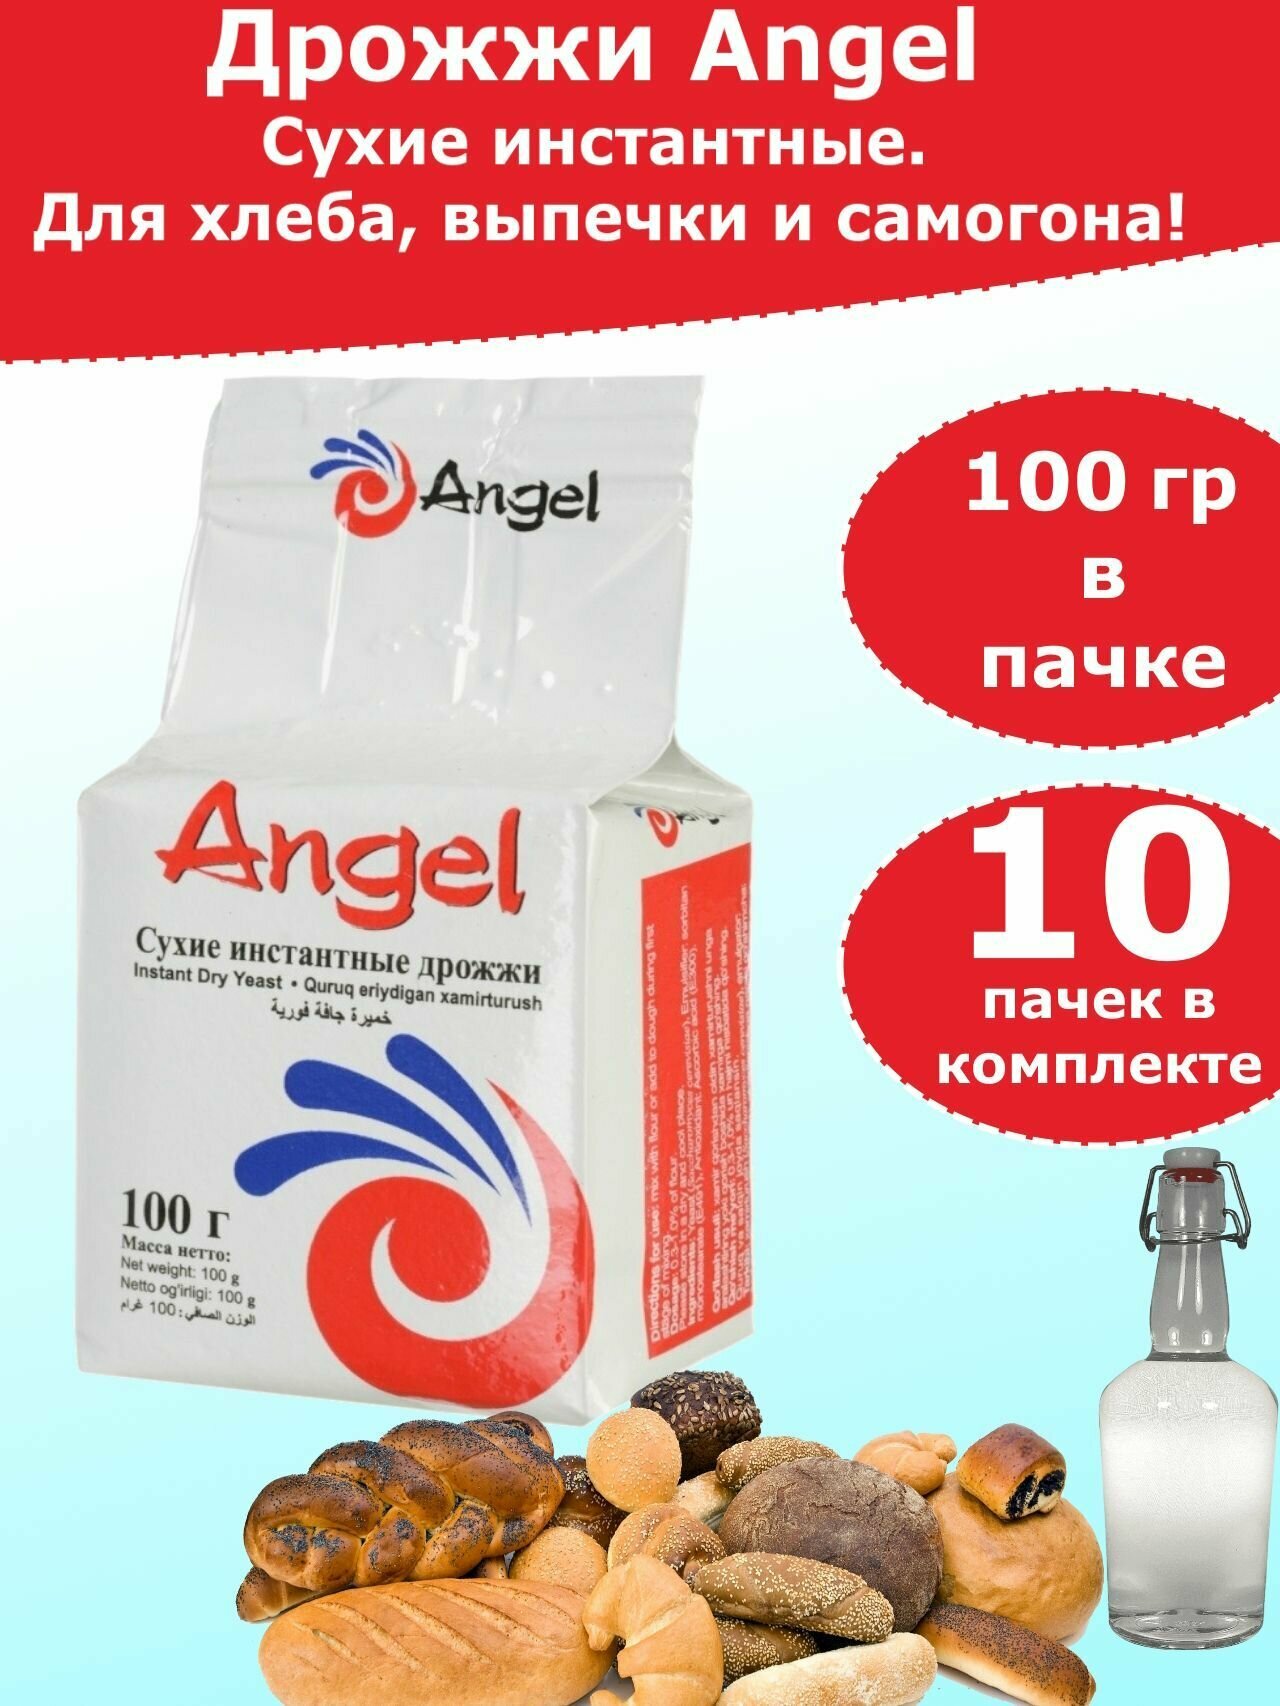 Дрожжи Ангел для хлебопечения и для самогона, 100 гр (комплект из 10 пачек)